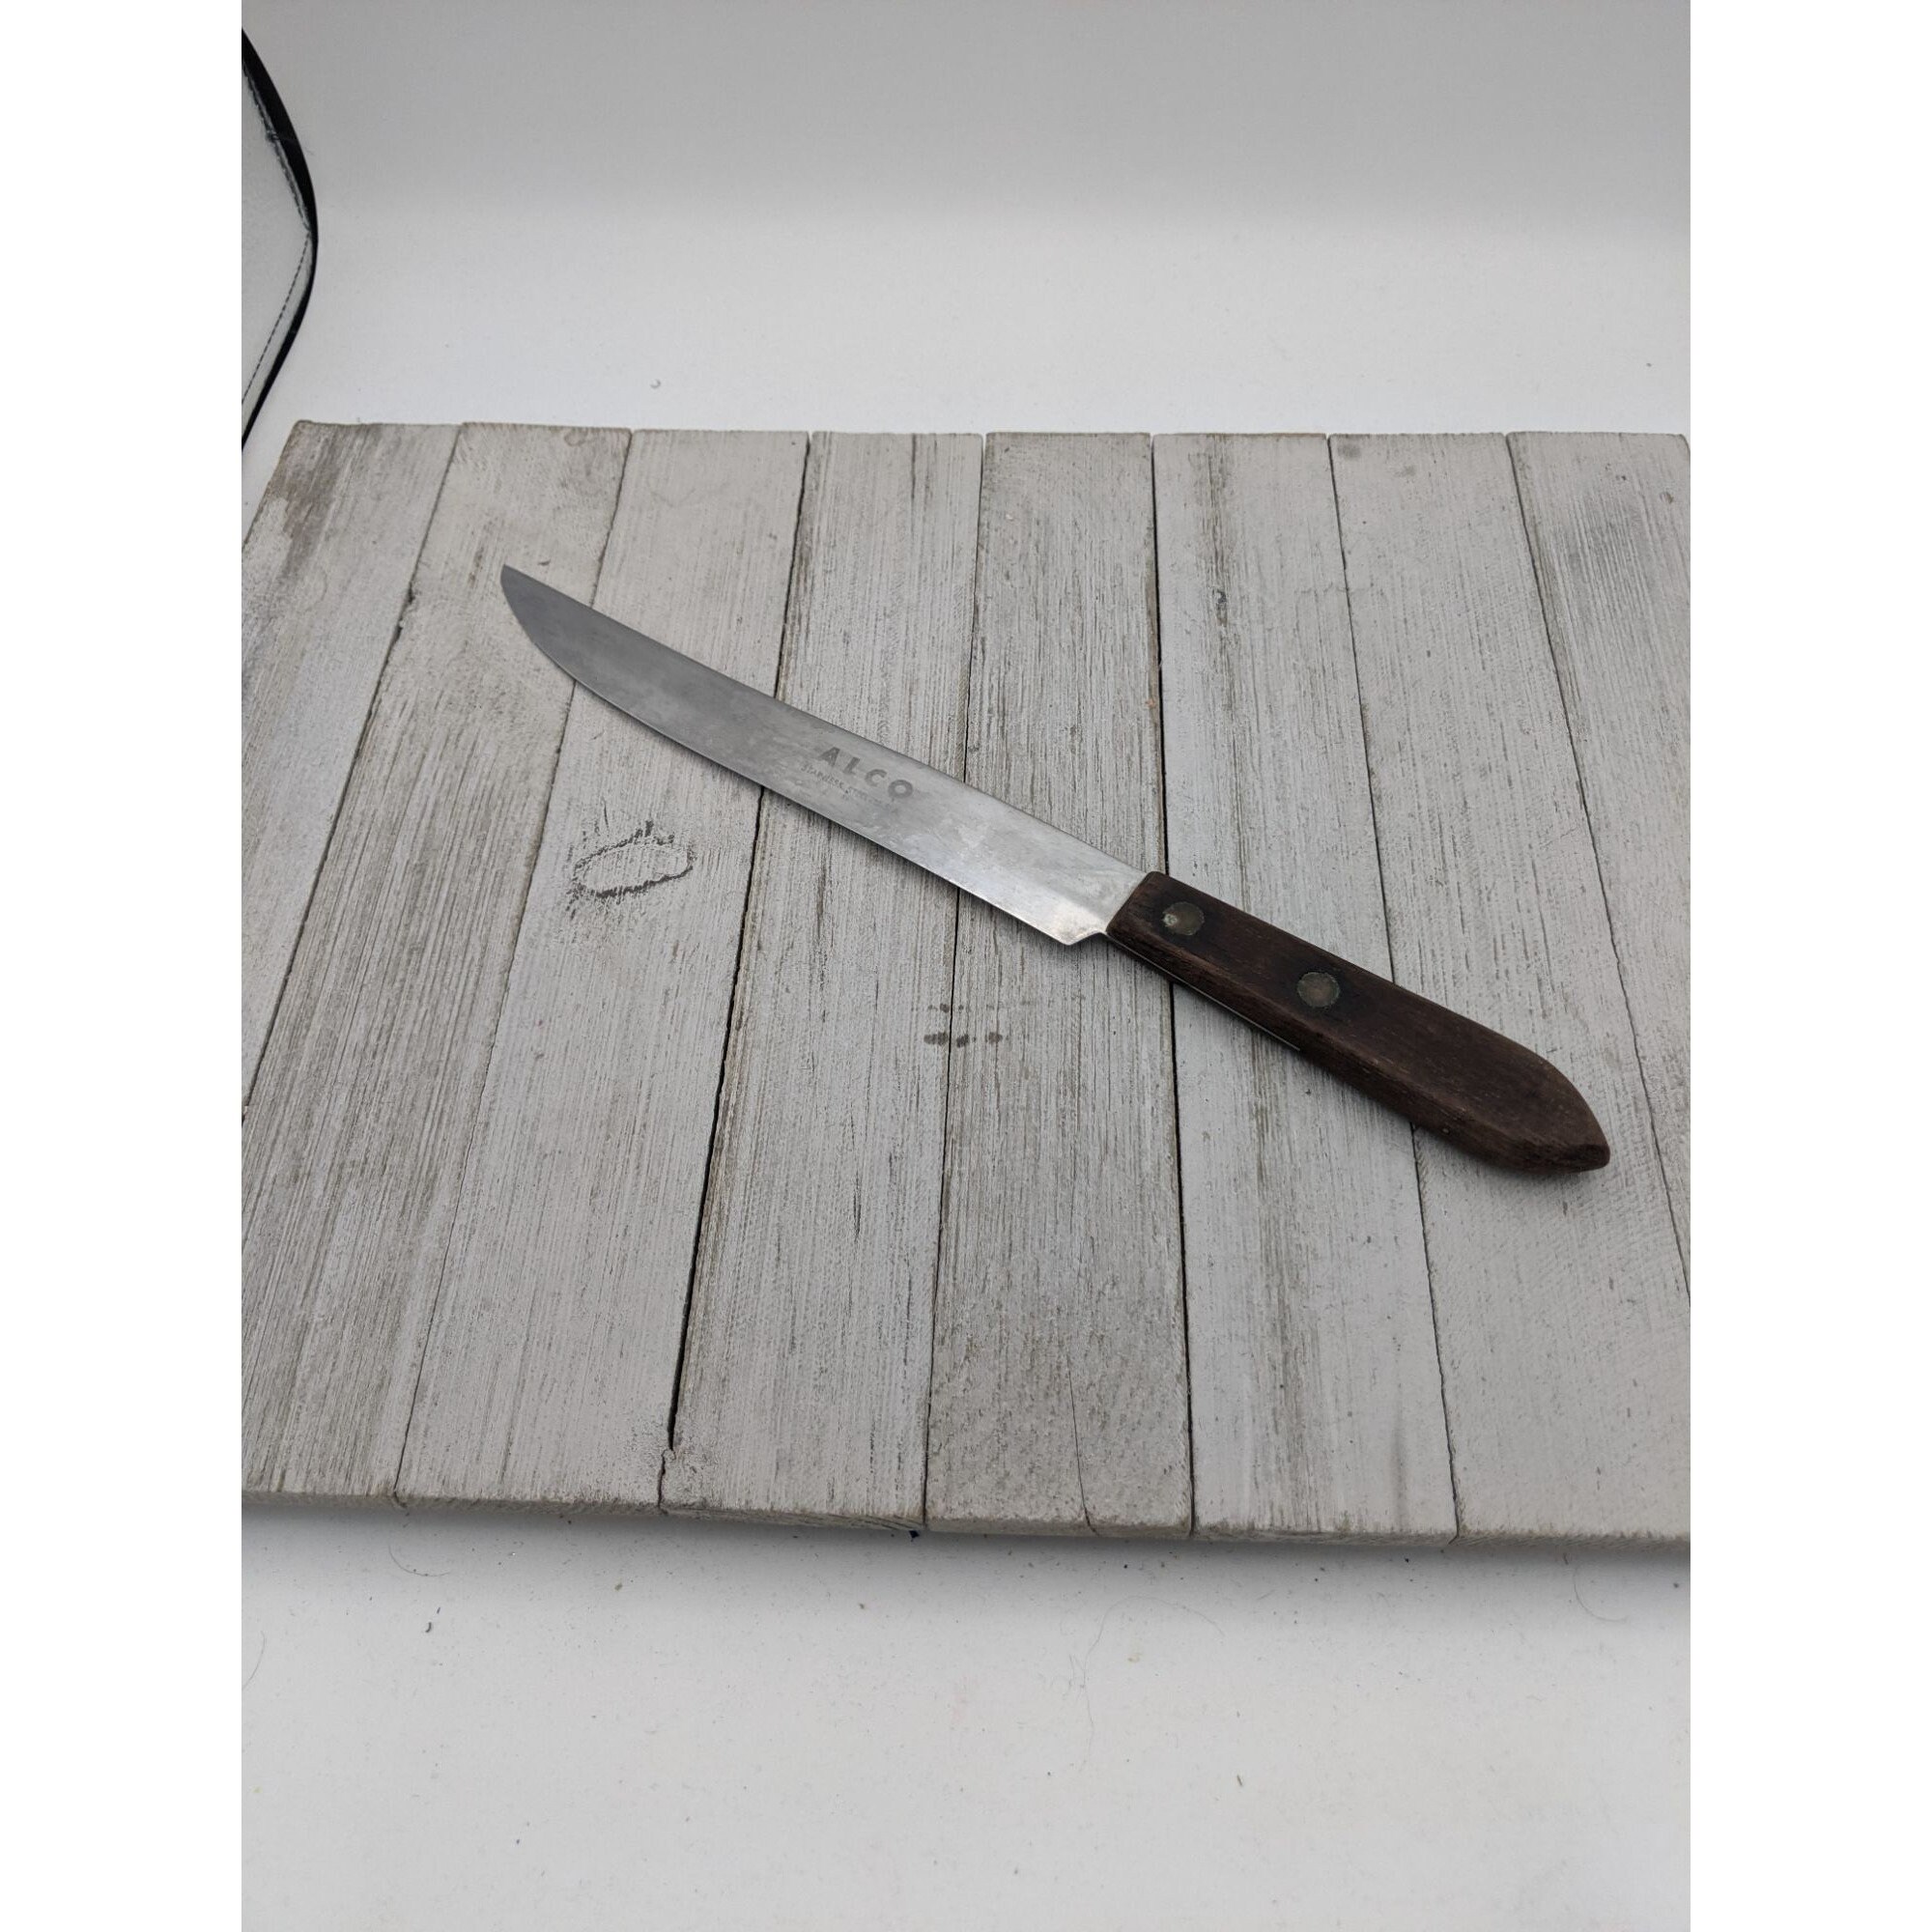 Vintage Black & Decker Electric Slicing Knife EK15D Carving Knife 